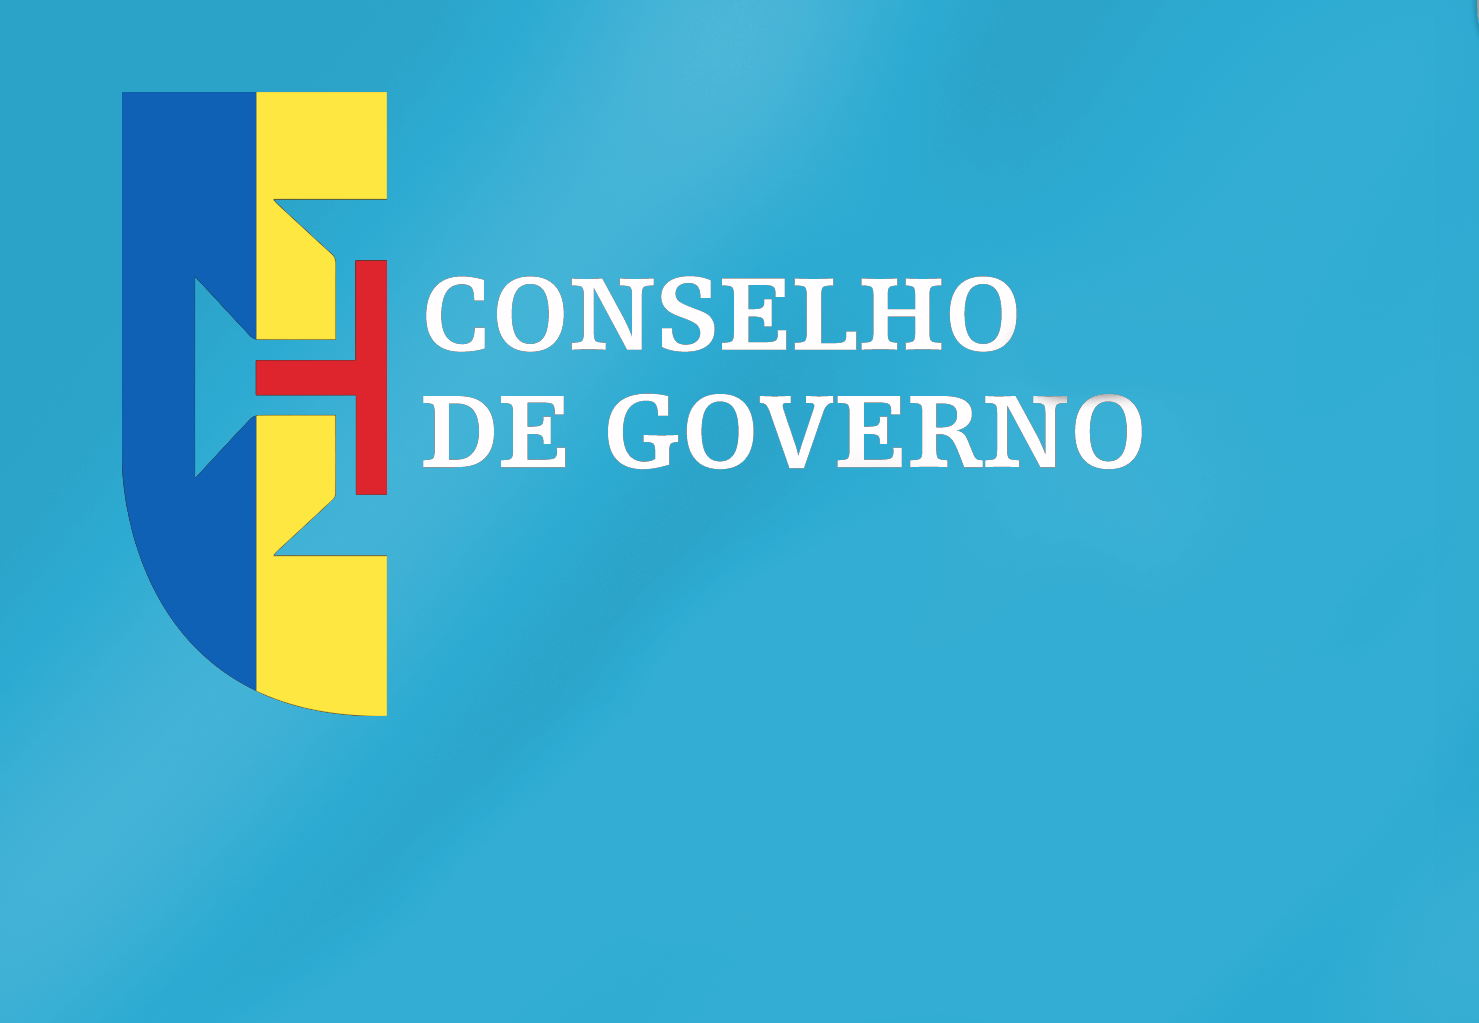 Conclusões Conselho de Governo - 22 de setembro de 2022